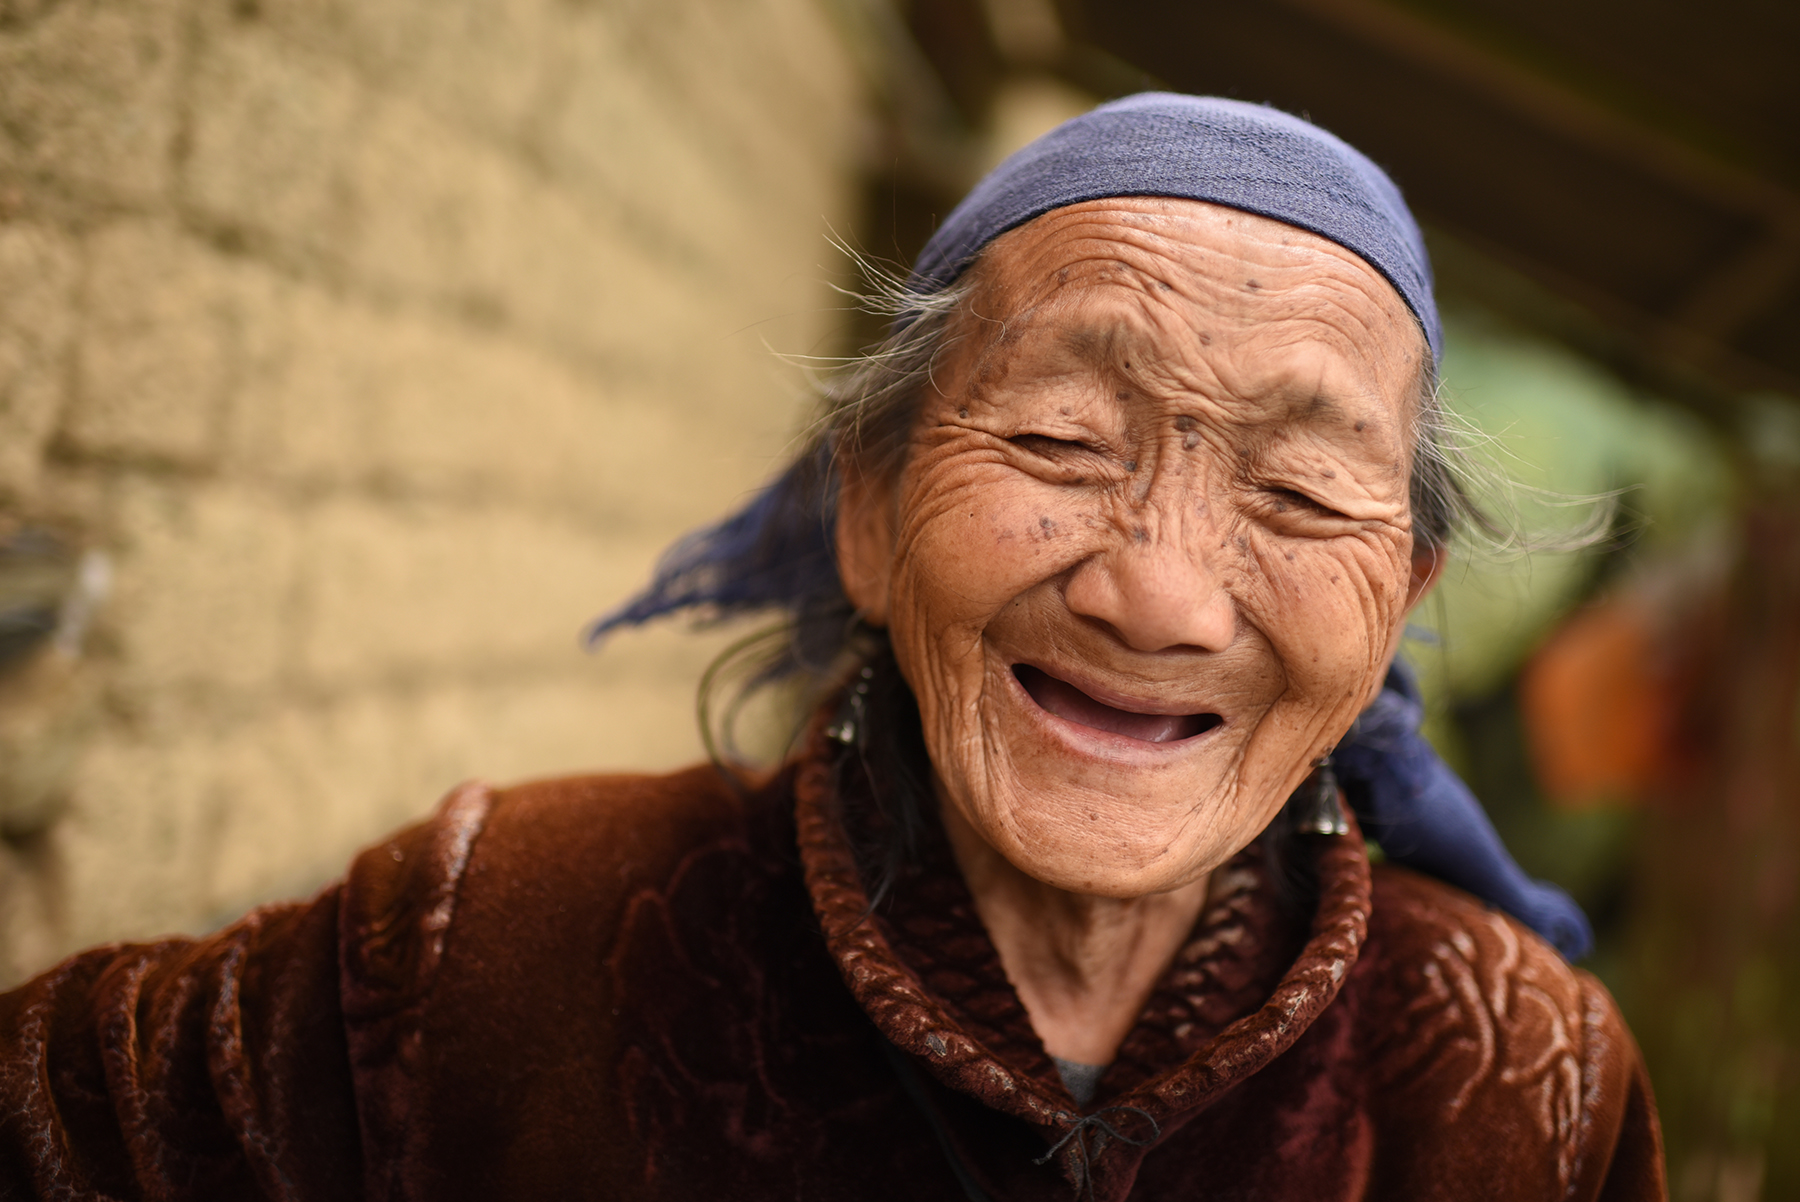  Hani elder, Potuo village, Yunnan, 2017 